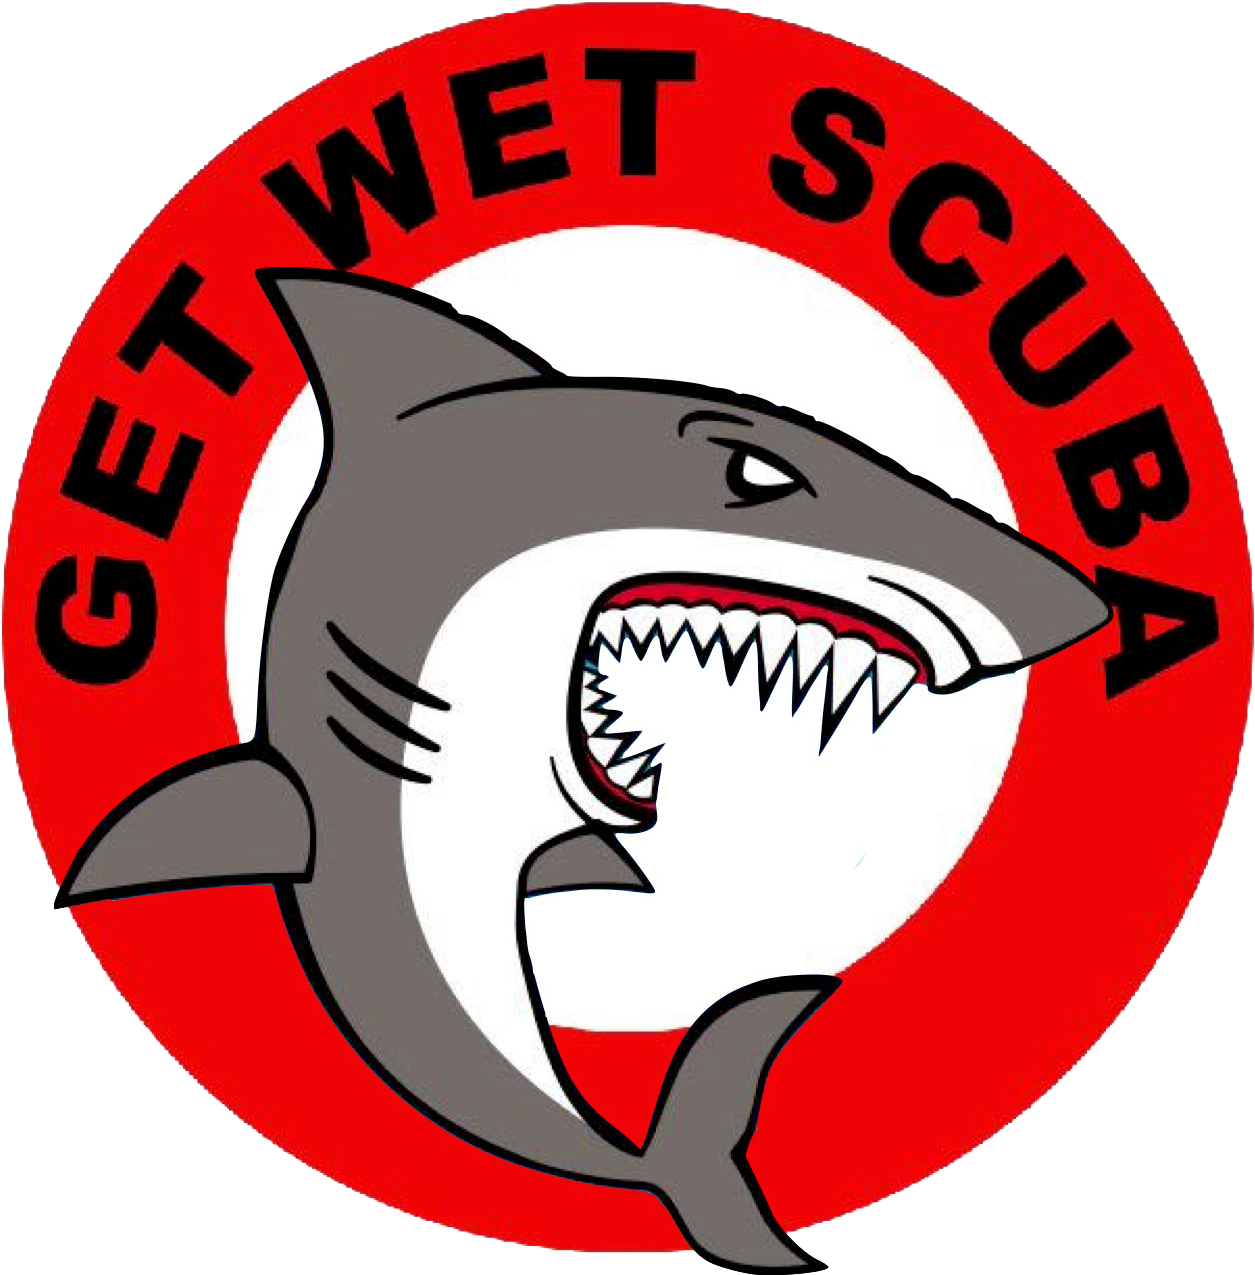 Get Wet Scuba Divers (2133x1600)